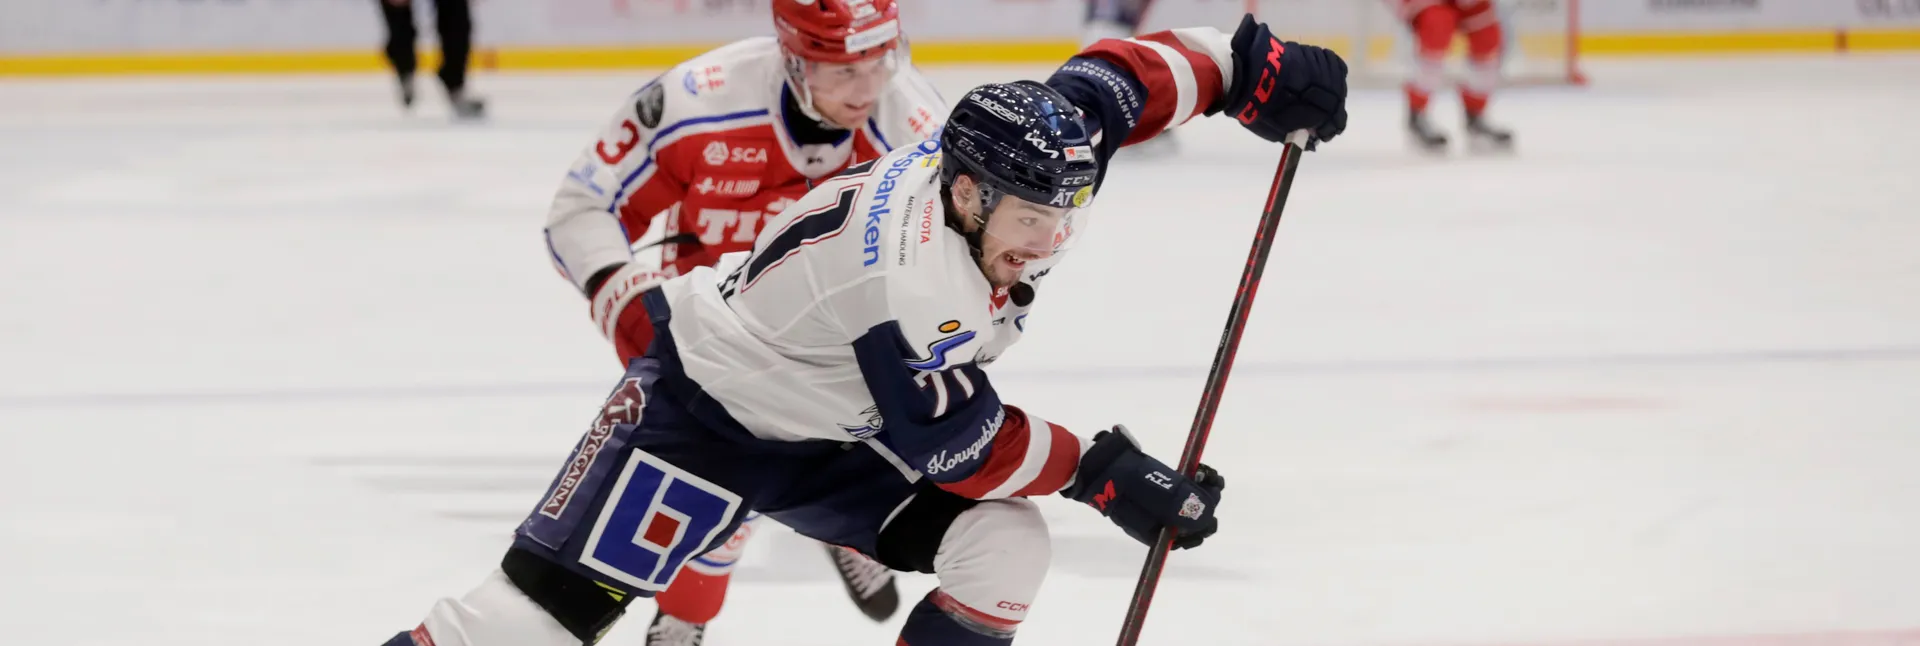 Ishockeymatch mellan Linköping och Timrå i SHL